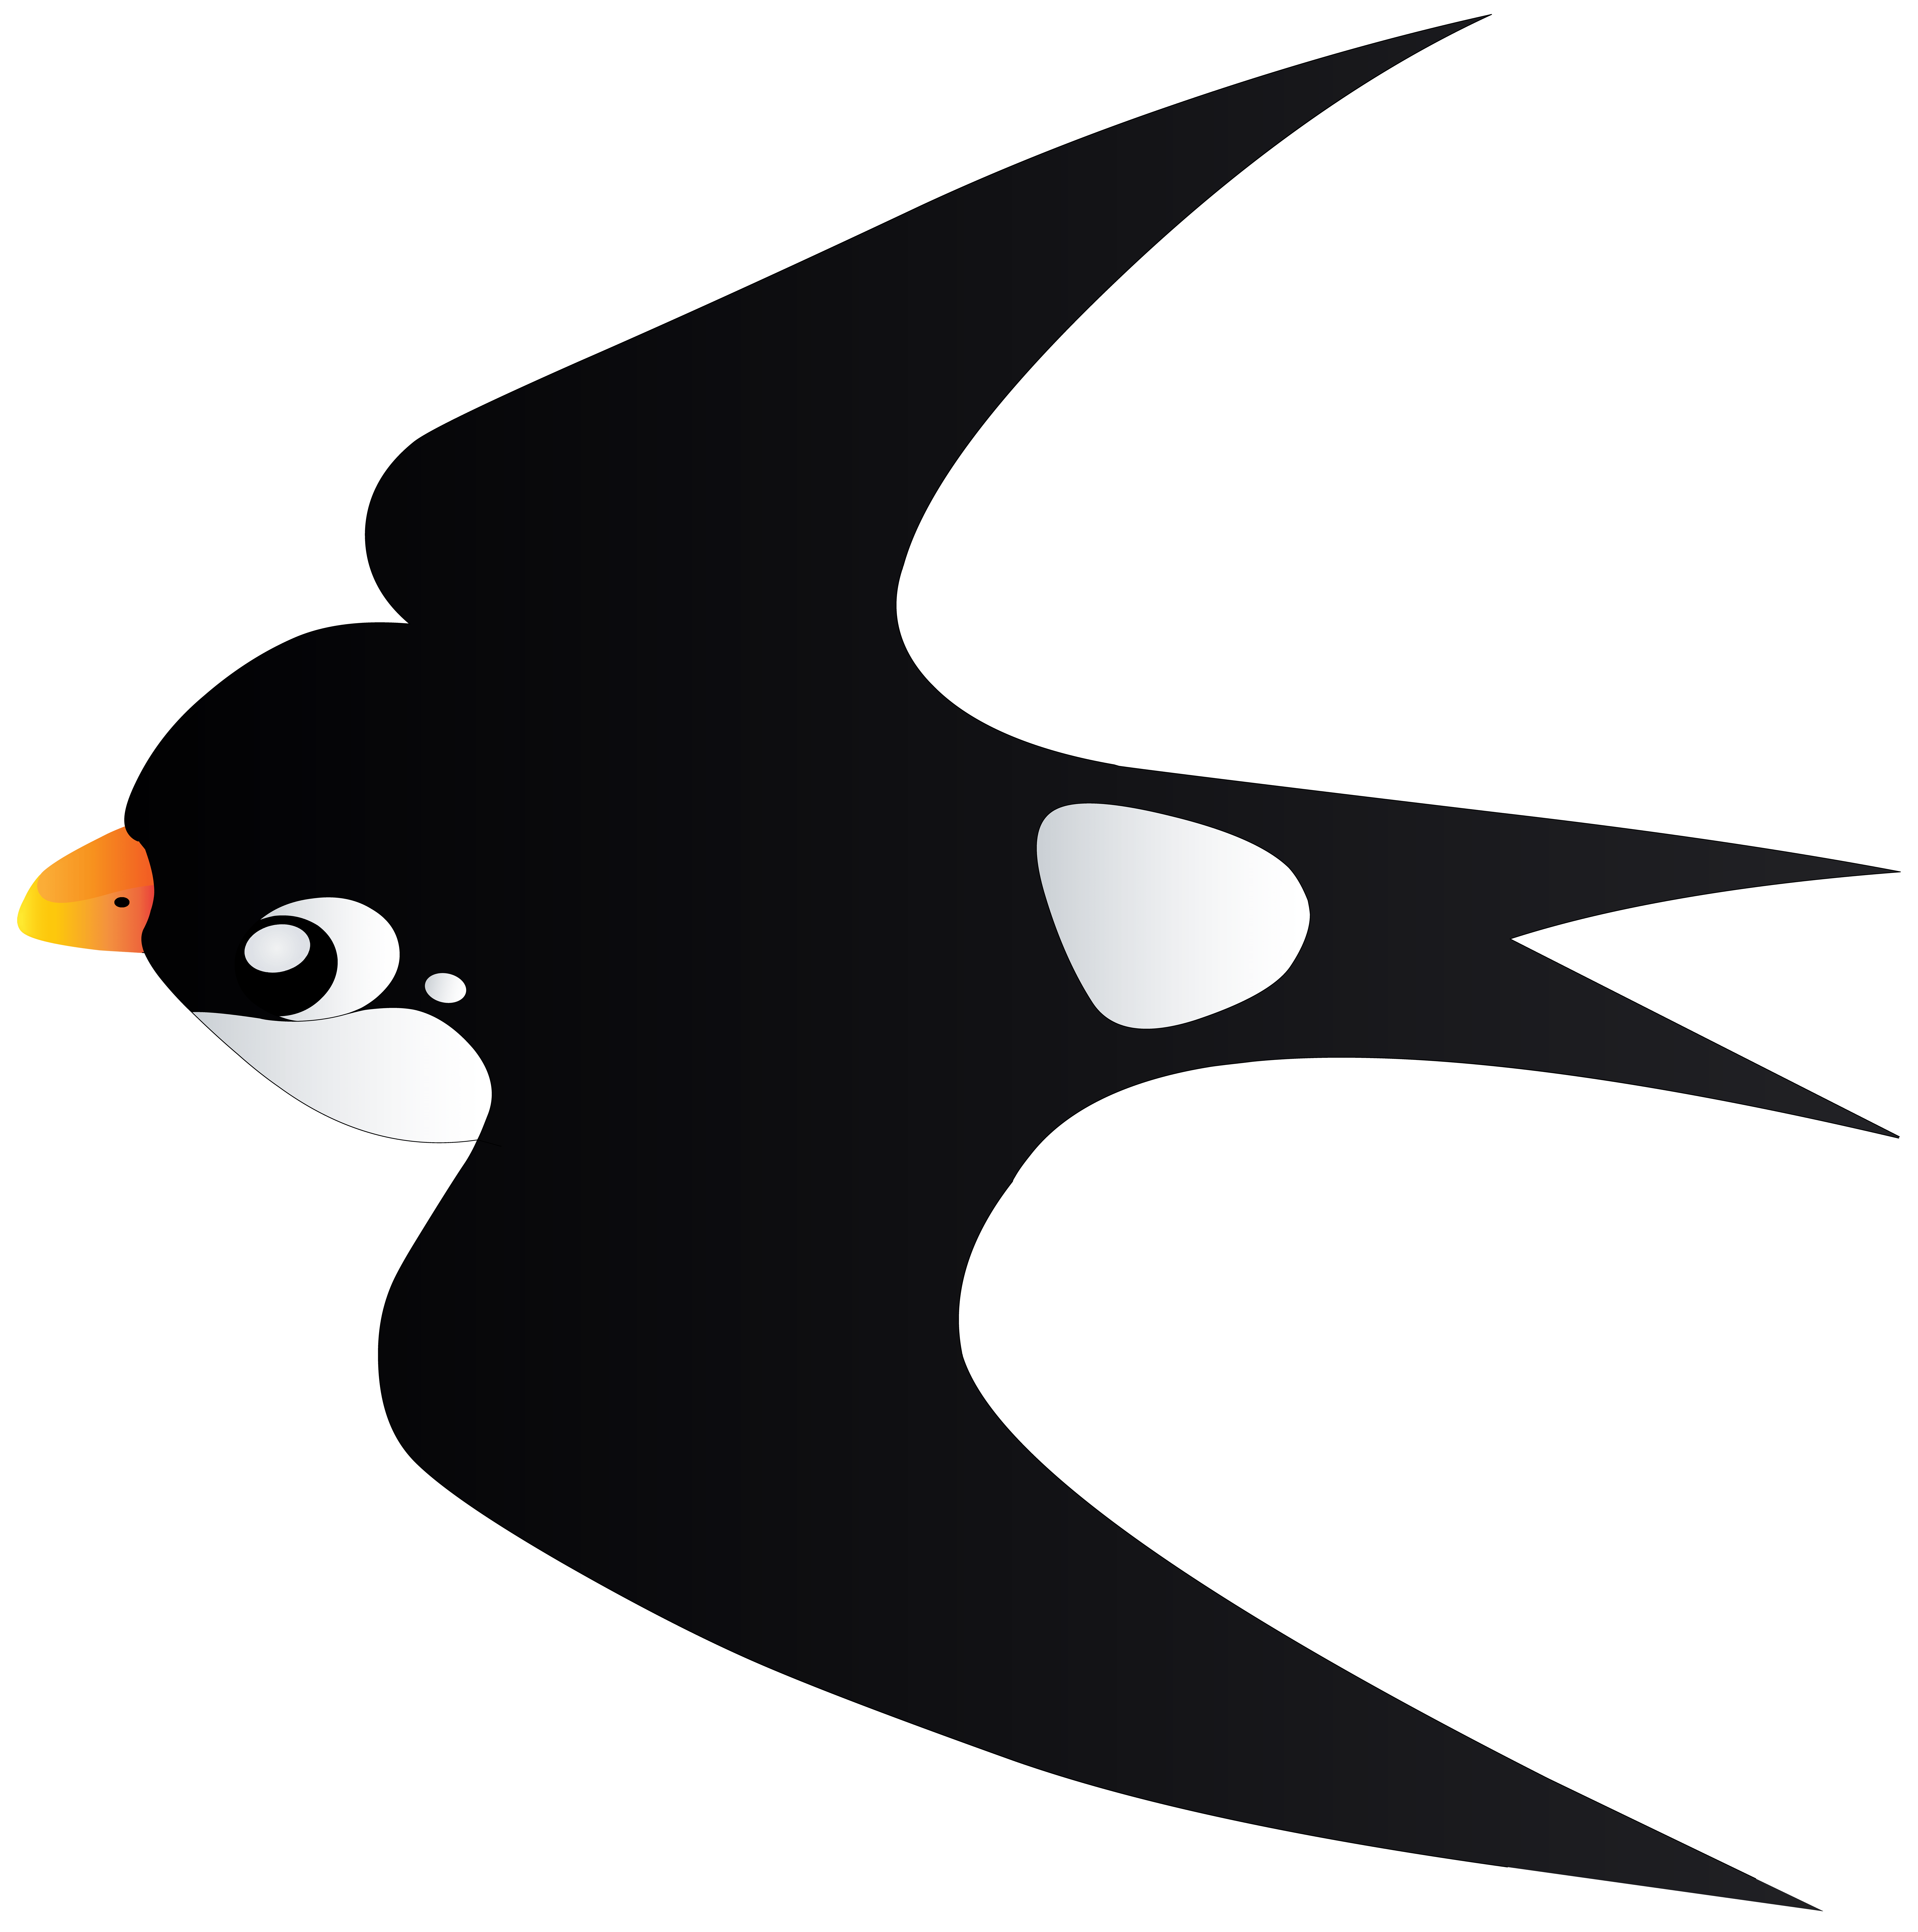 Black Bird Cartoon Logo - Swallow Bird Cartoon Transparent PNG Image | Gallery Yopriceville ...